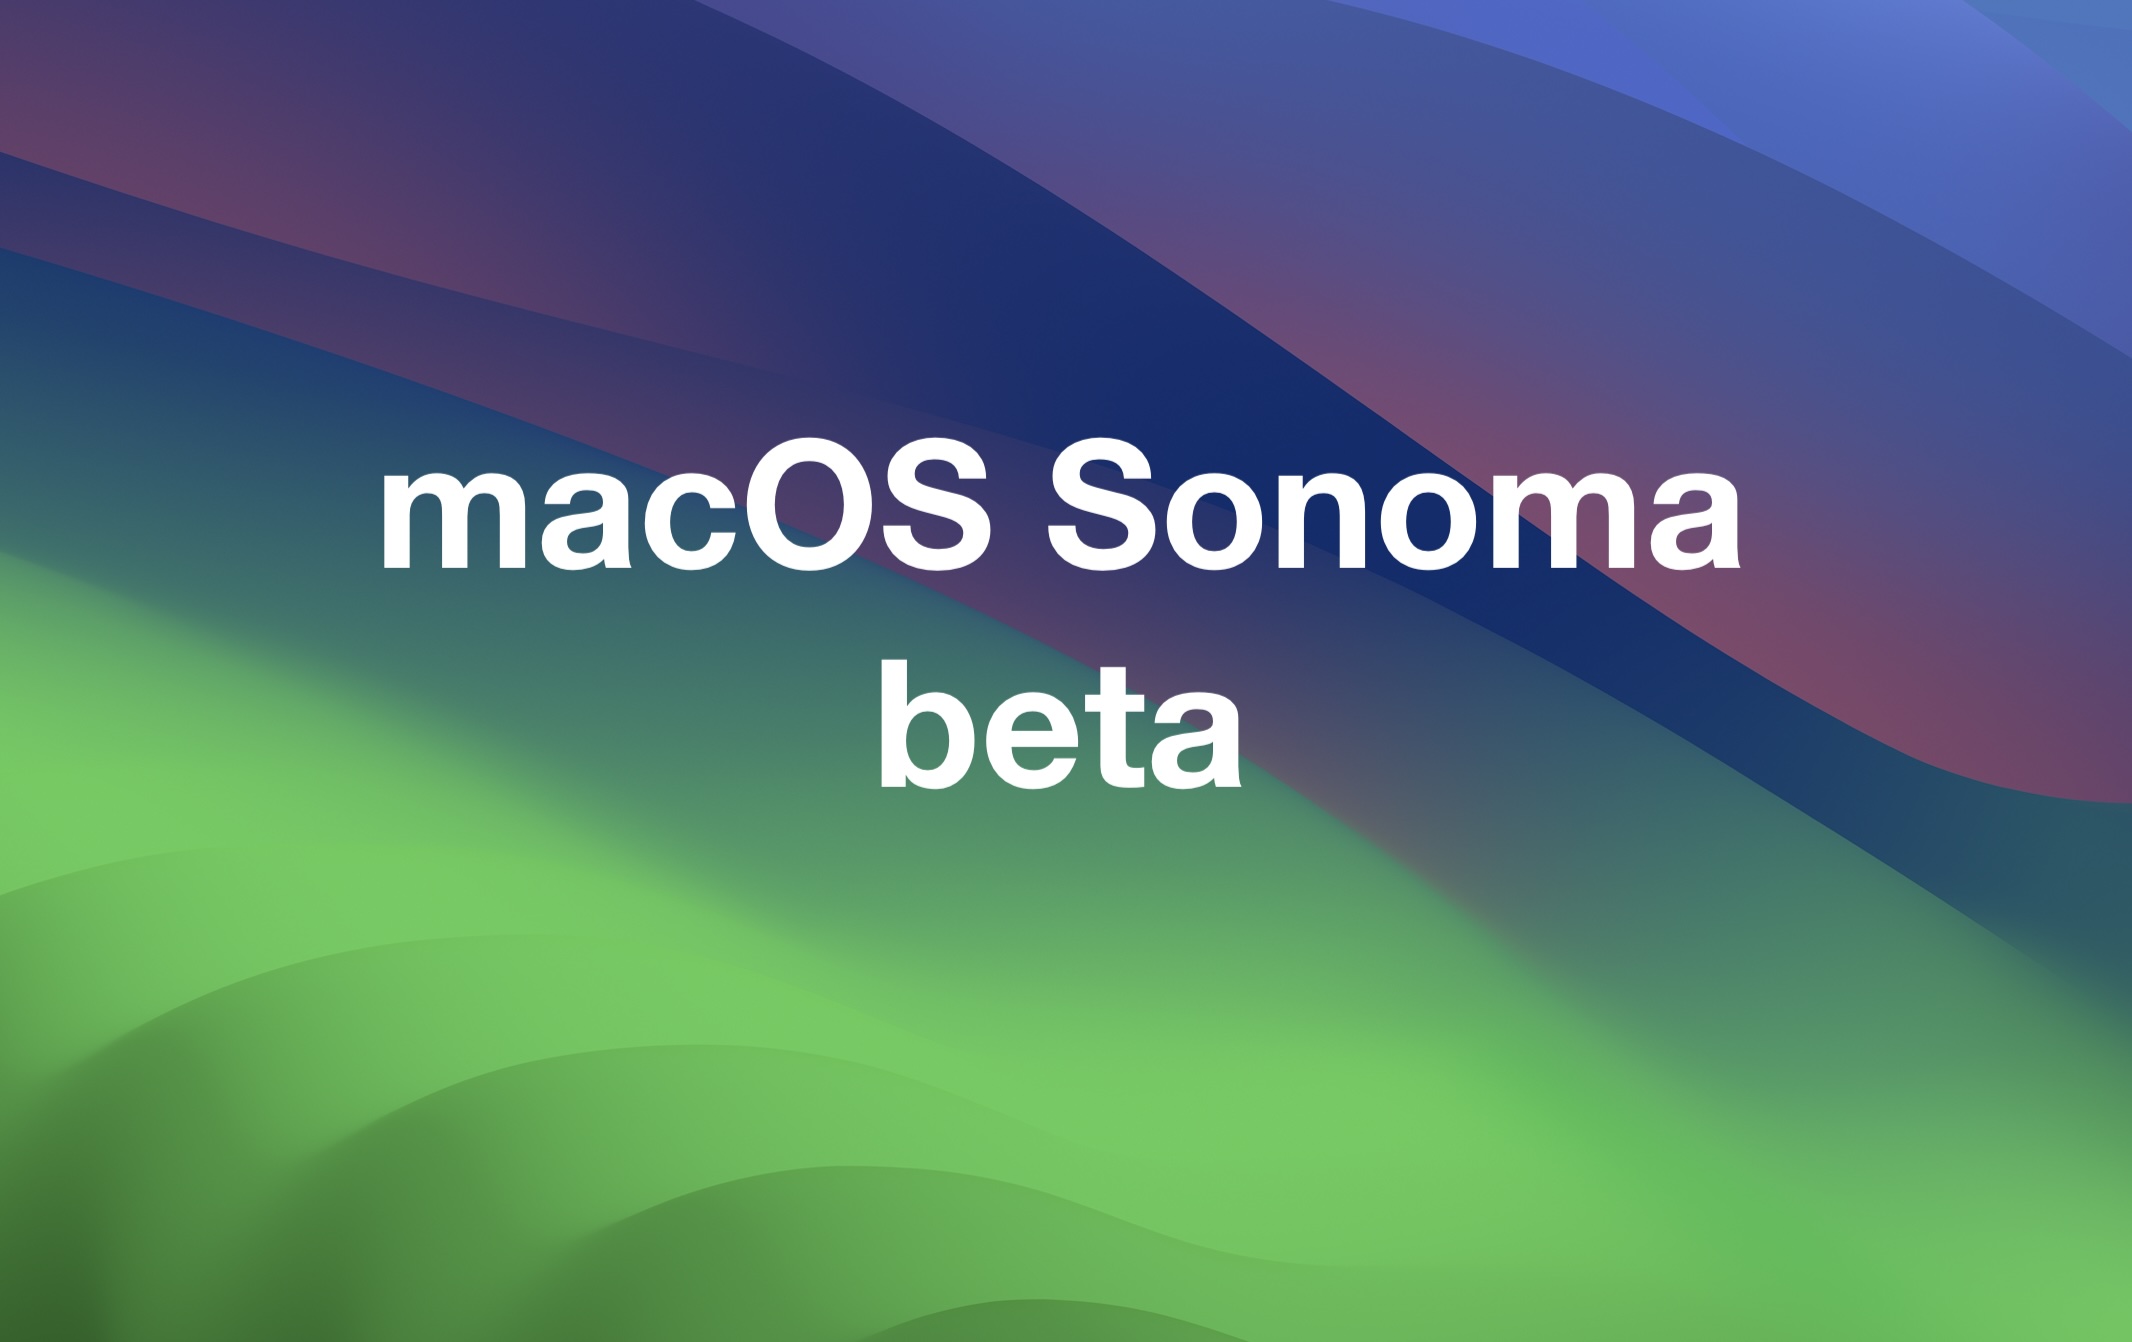 MacOS Sonoma 14.1 bèta is beschikbaar om te downloaden